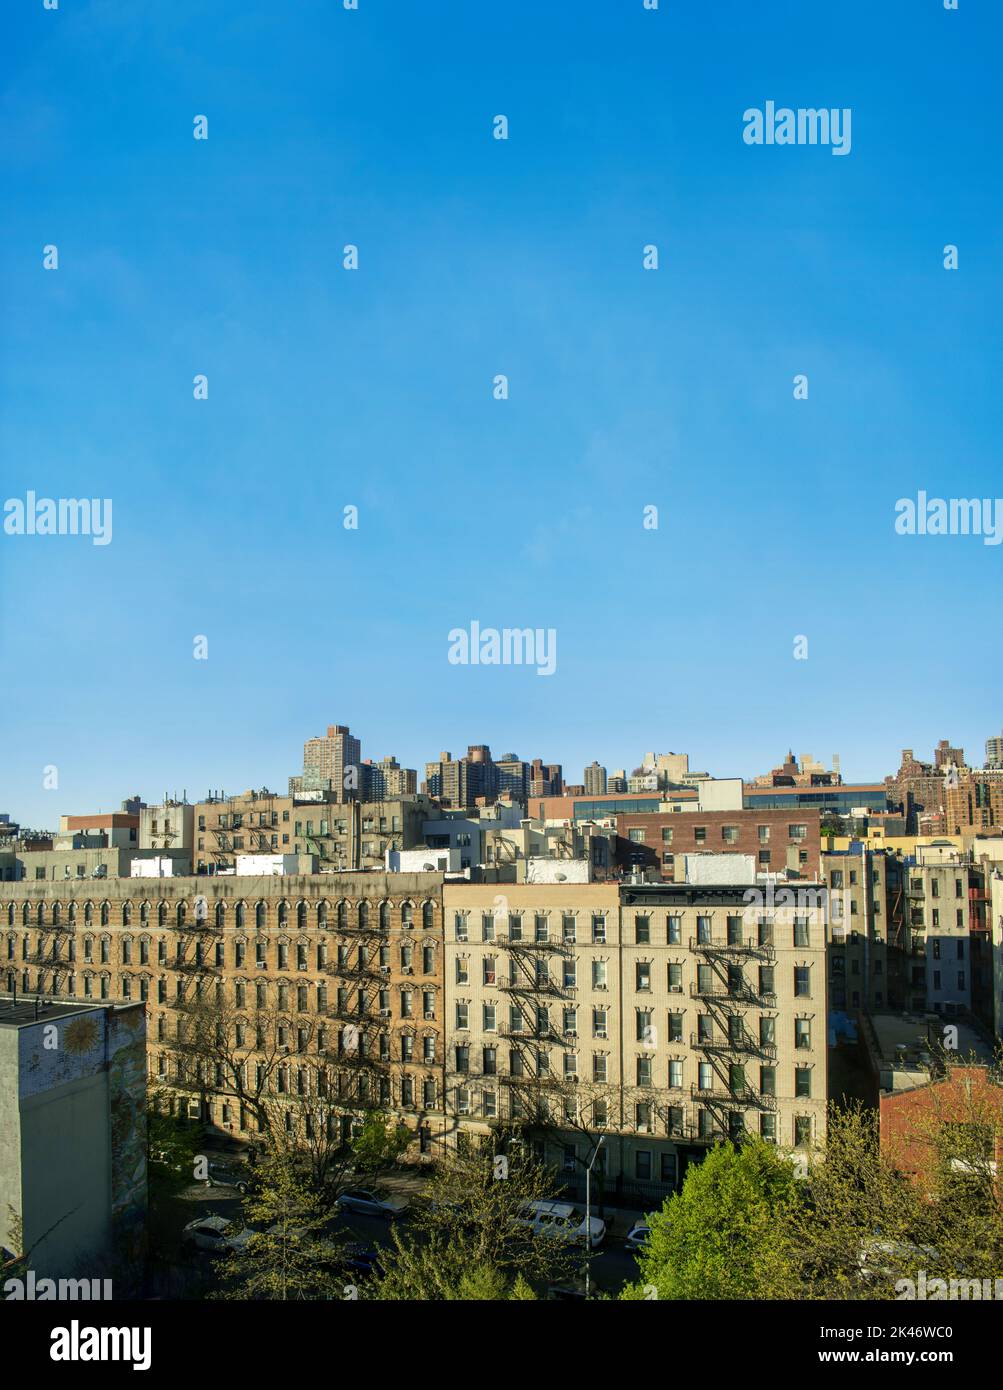 parte superior este de los edificios de la ciudad de harlem de nueva york Foto de stock